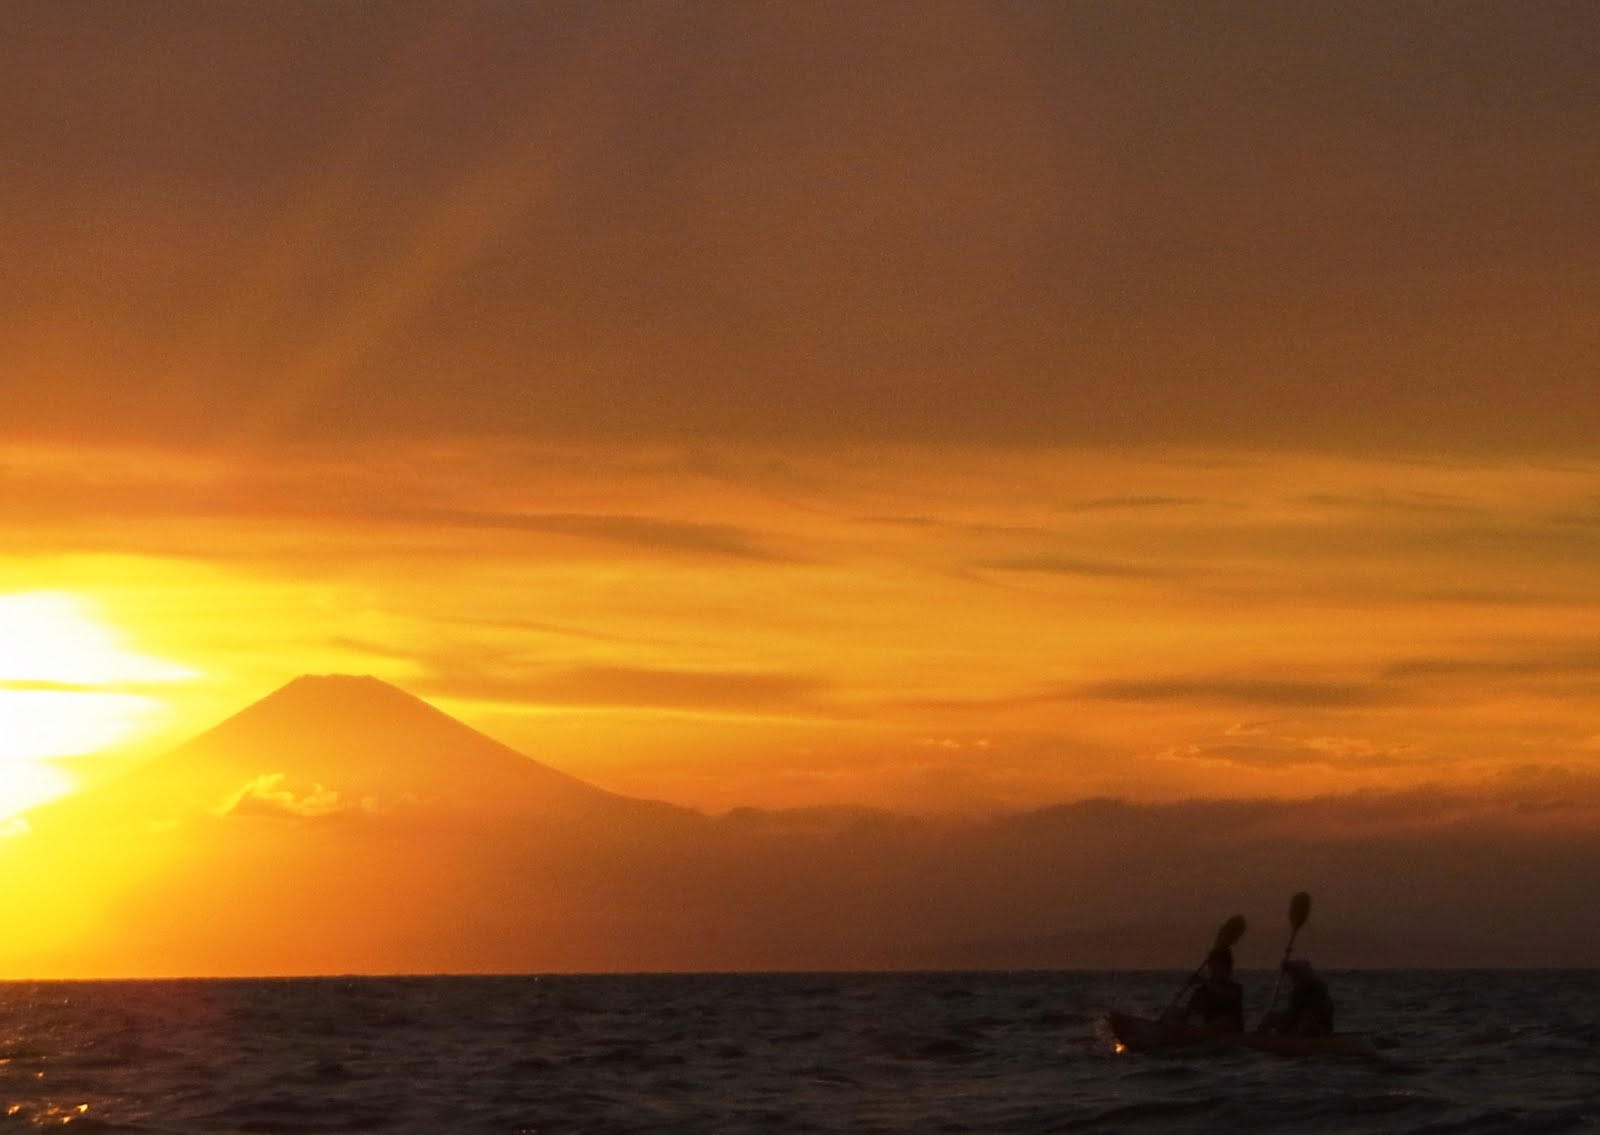 Wataru Narita shares one of his favorite images, taken while kayaking.